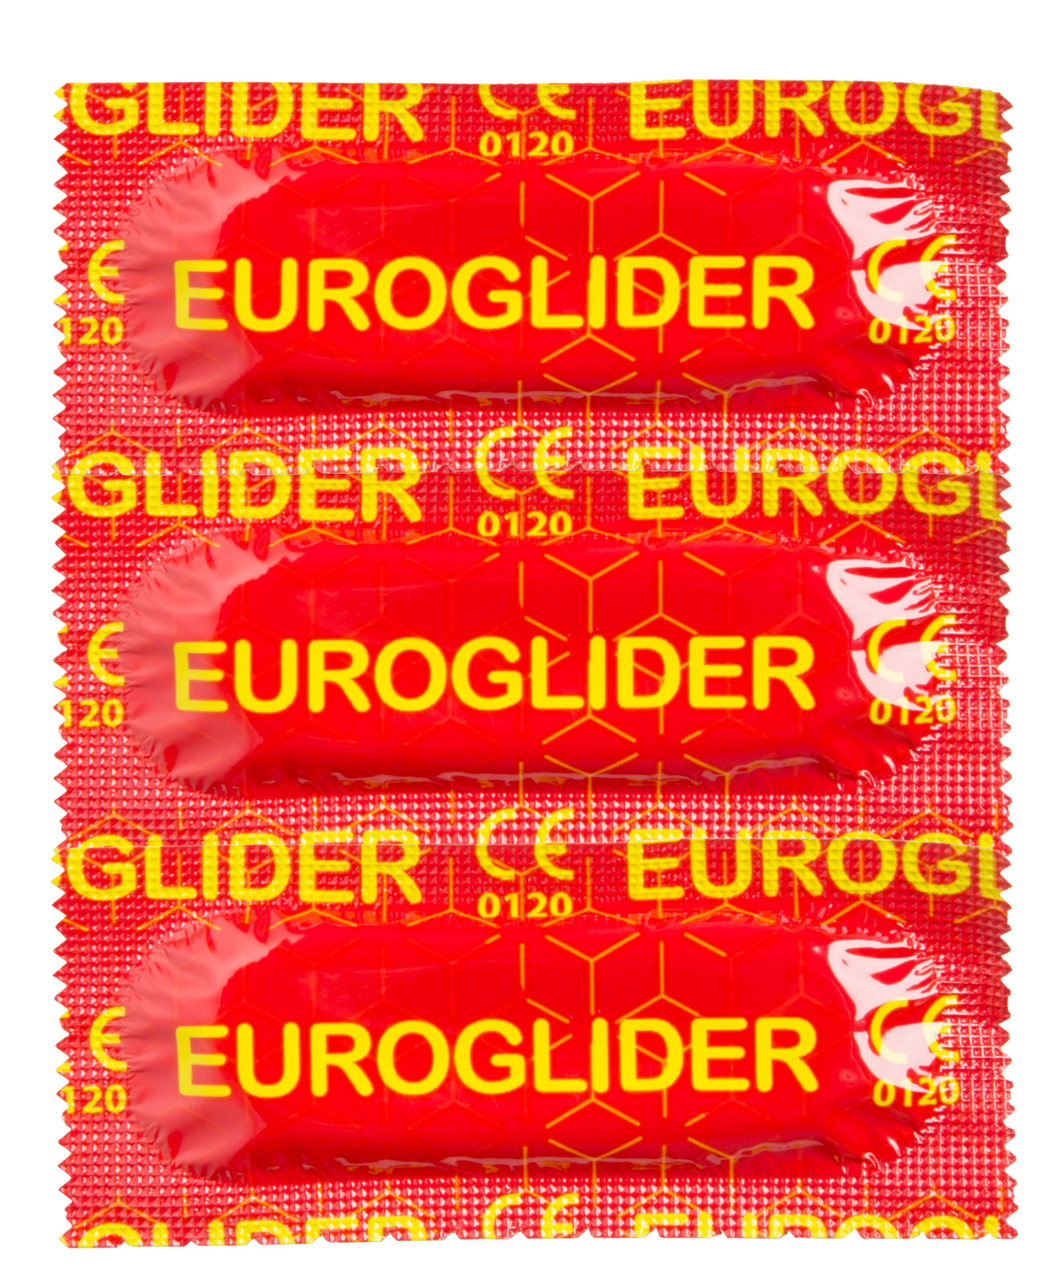 Euroglider презервативы (144 шт.)